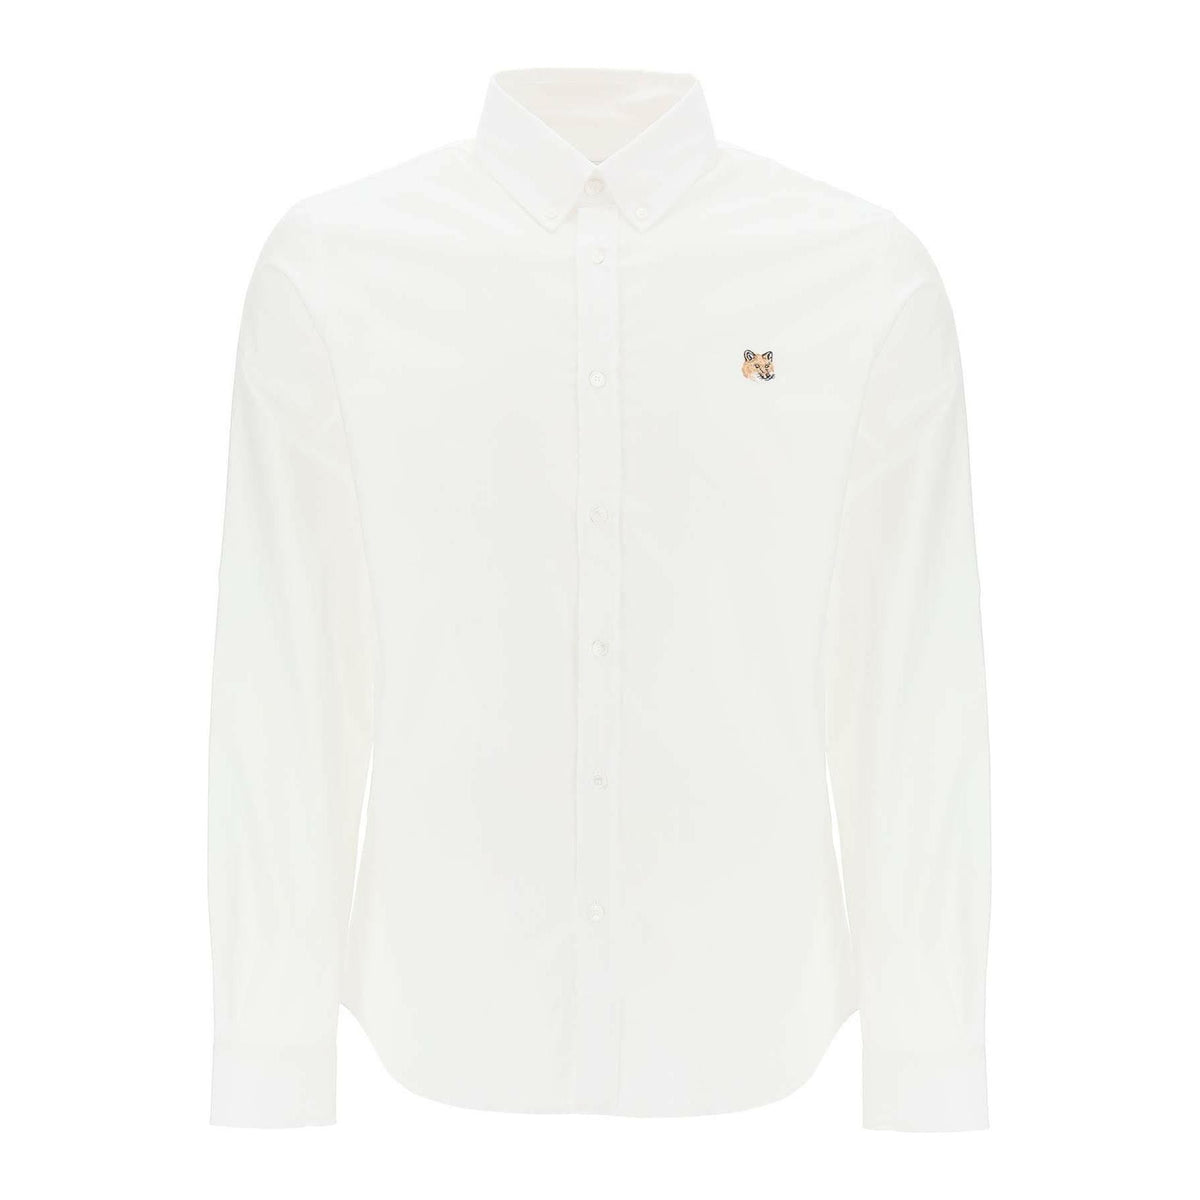 MAISON KITSUNE - White Oxford Cotton Shirt - JOHN JULIA